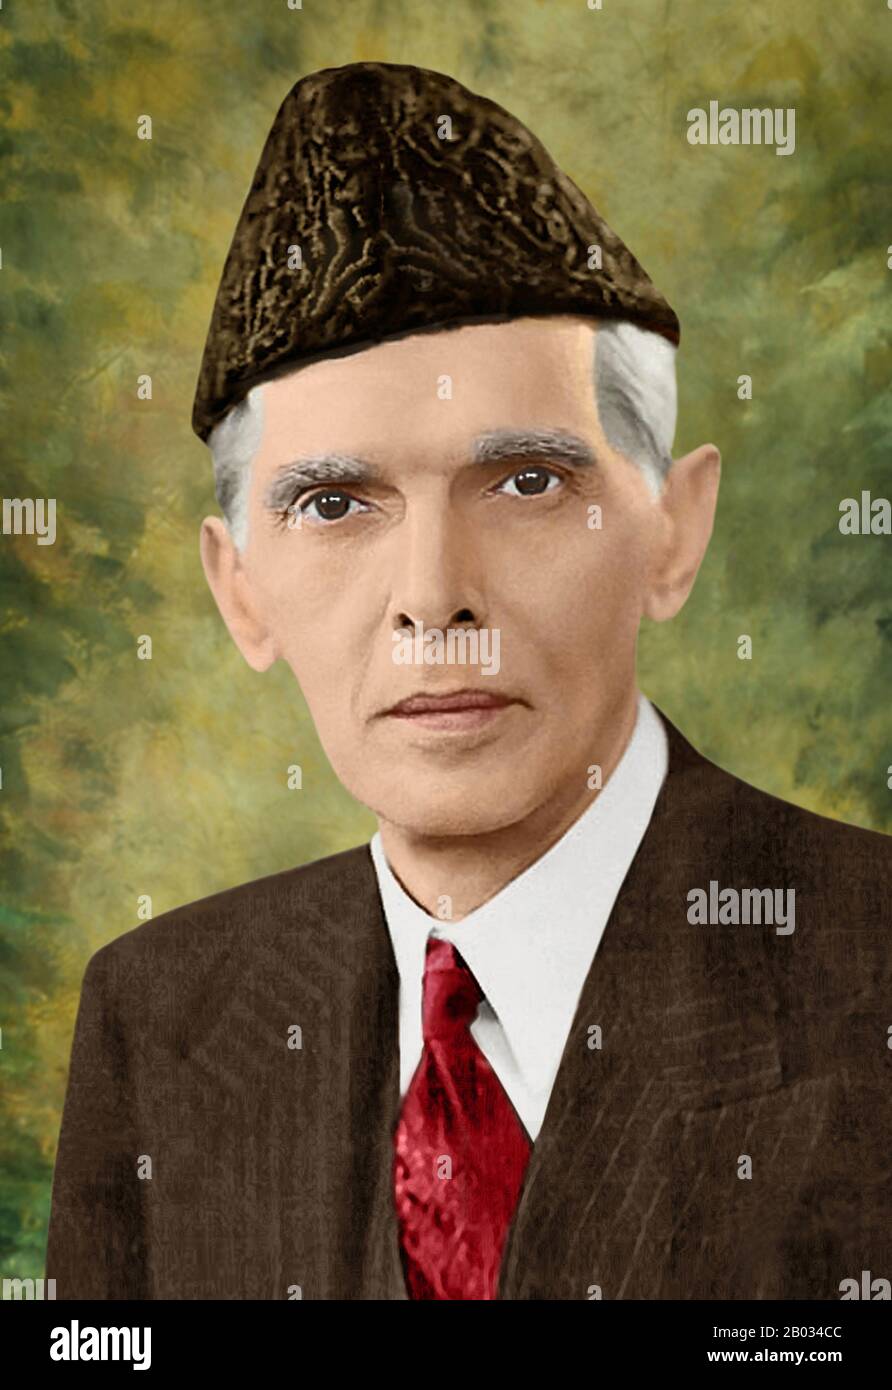 Muhammad Ali Jinnah (25 décembre 1876 – 11 septembre 1948) était avocat, politicien, homme d'État et fondateur du Pakistan au XXe siècle. Il est populairement et officiellement connu au Pakistan sous le nom de Quaid-e-Azam (Grand leader). Jinnah est décédée à 71 ans en septembre 1948, un peu plus d'un an après que le Pakistan ait obtenu son indépendance de l'Empire britannique. Banque D'Images